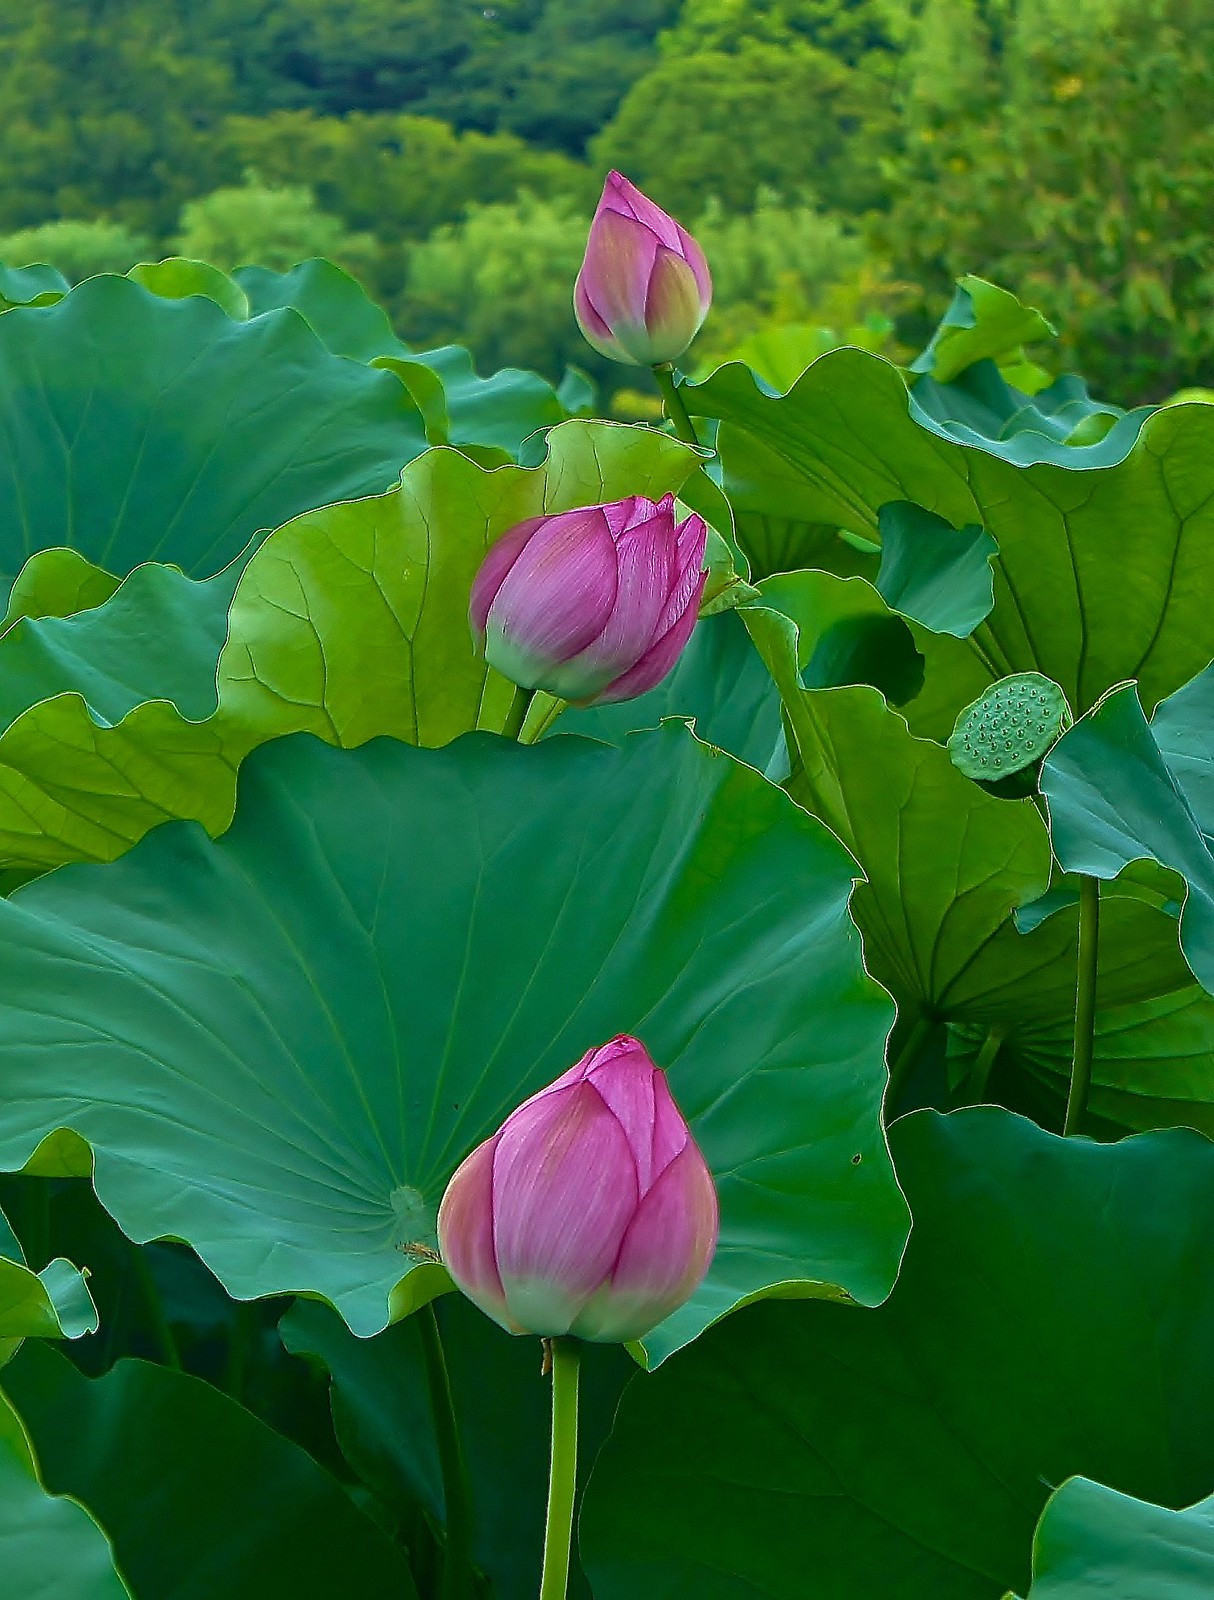 Lotus flowers at Shinobazu Pond